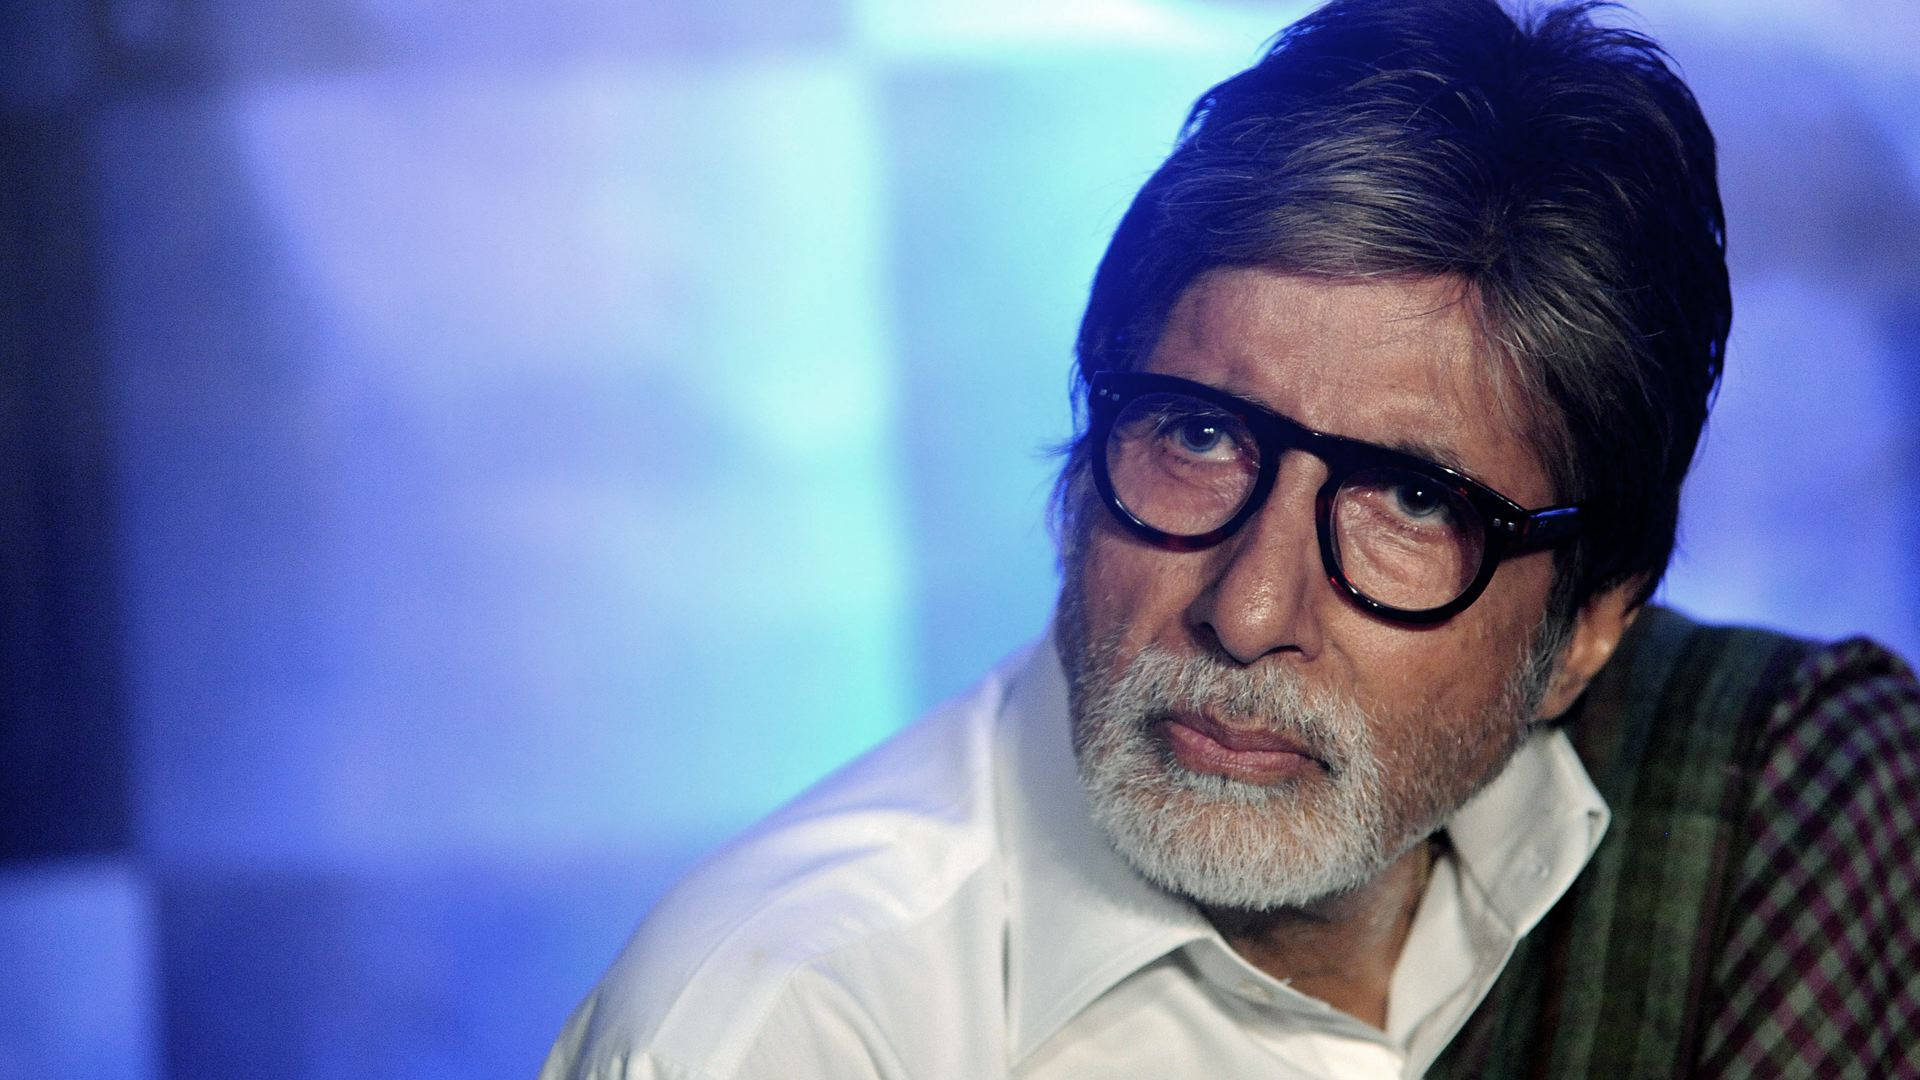 Amitabh Bachchan, den berømte skuespiller, skinner i fuld glans. Wallpaper